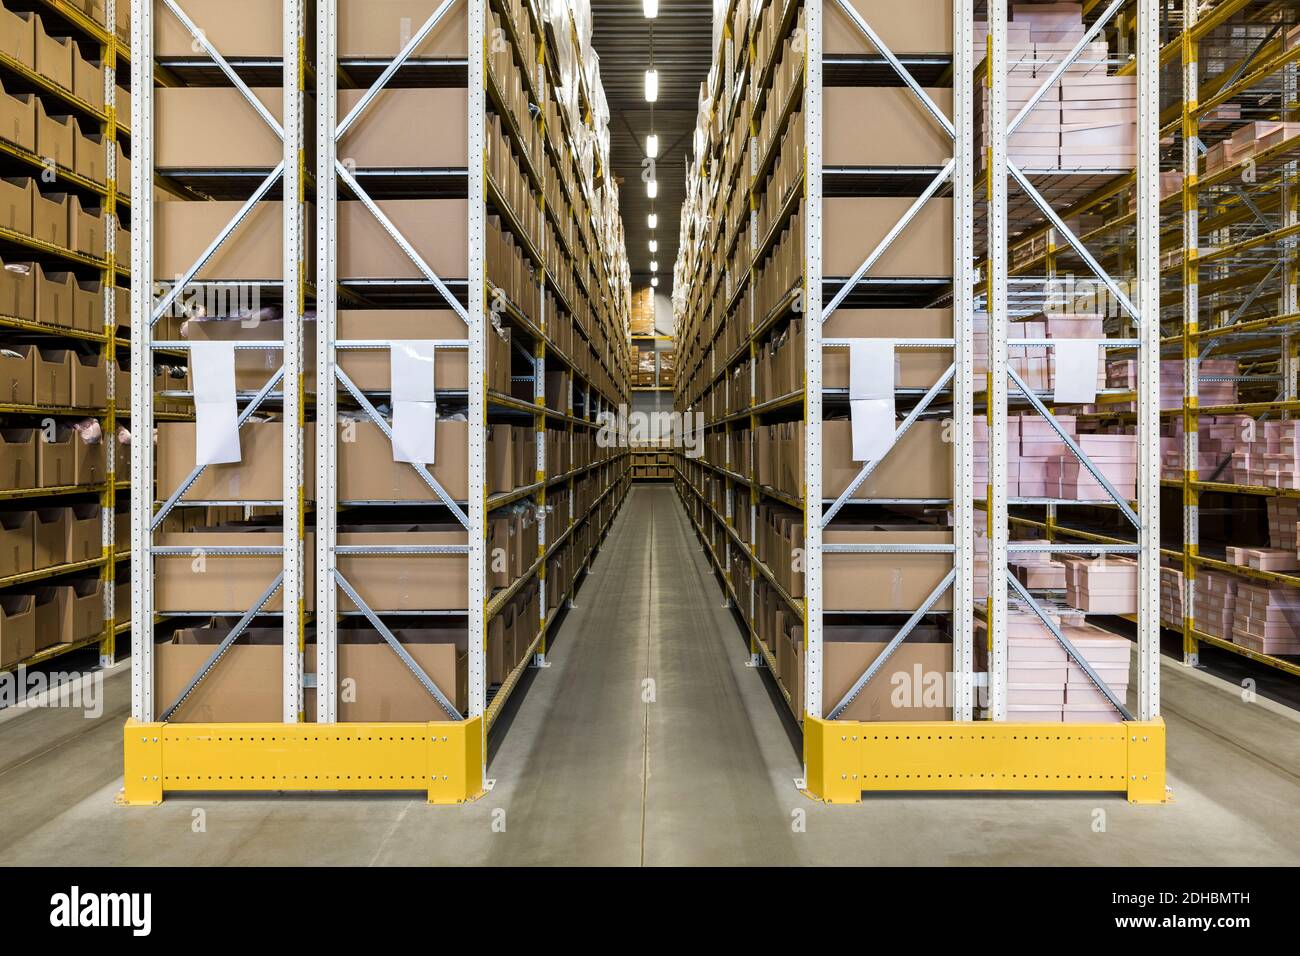 Empty narrow aisle amidst racks at distribution warehouse Stock Photo